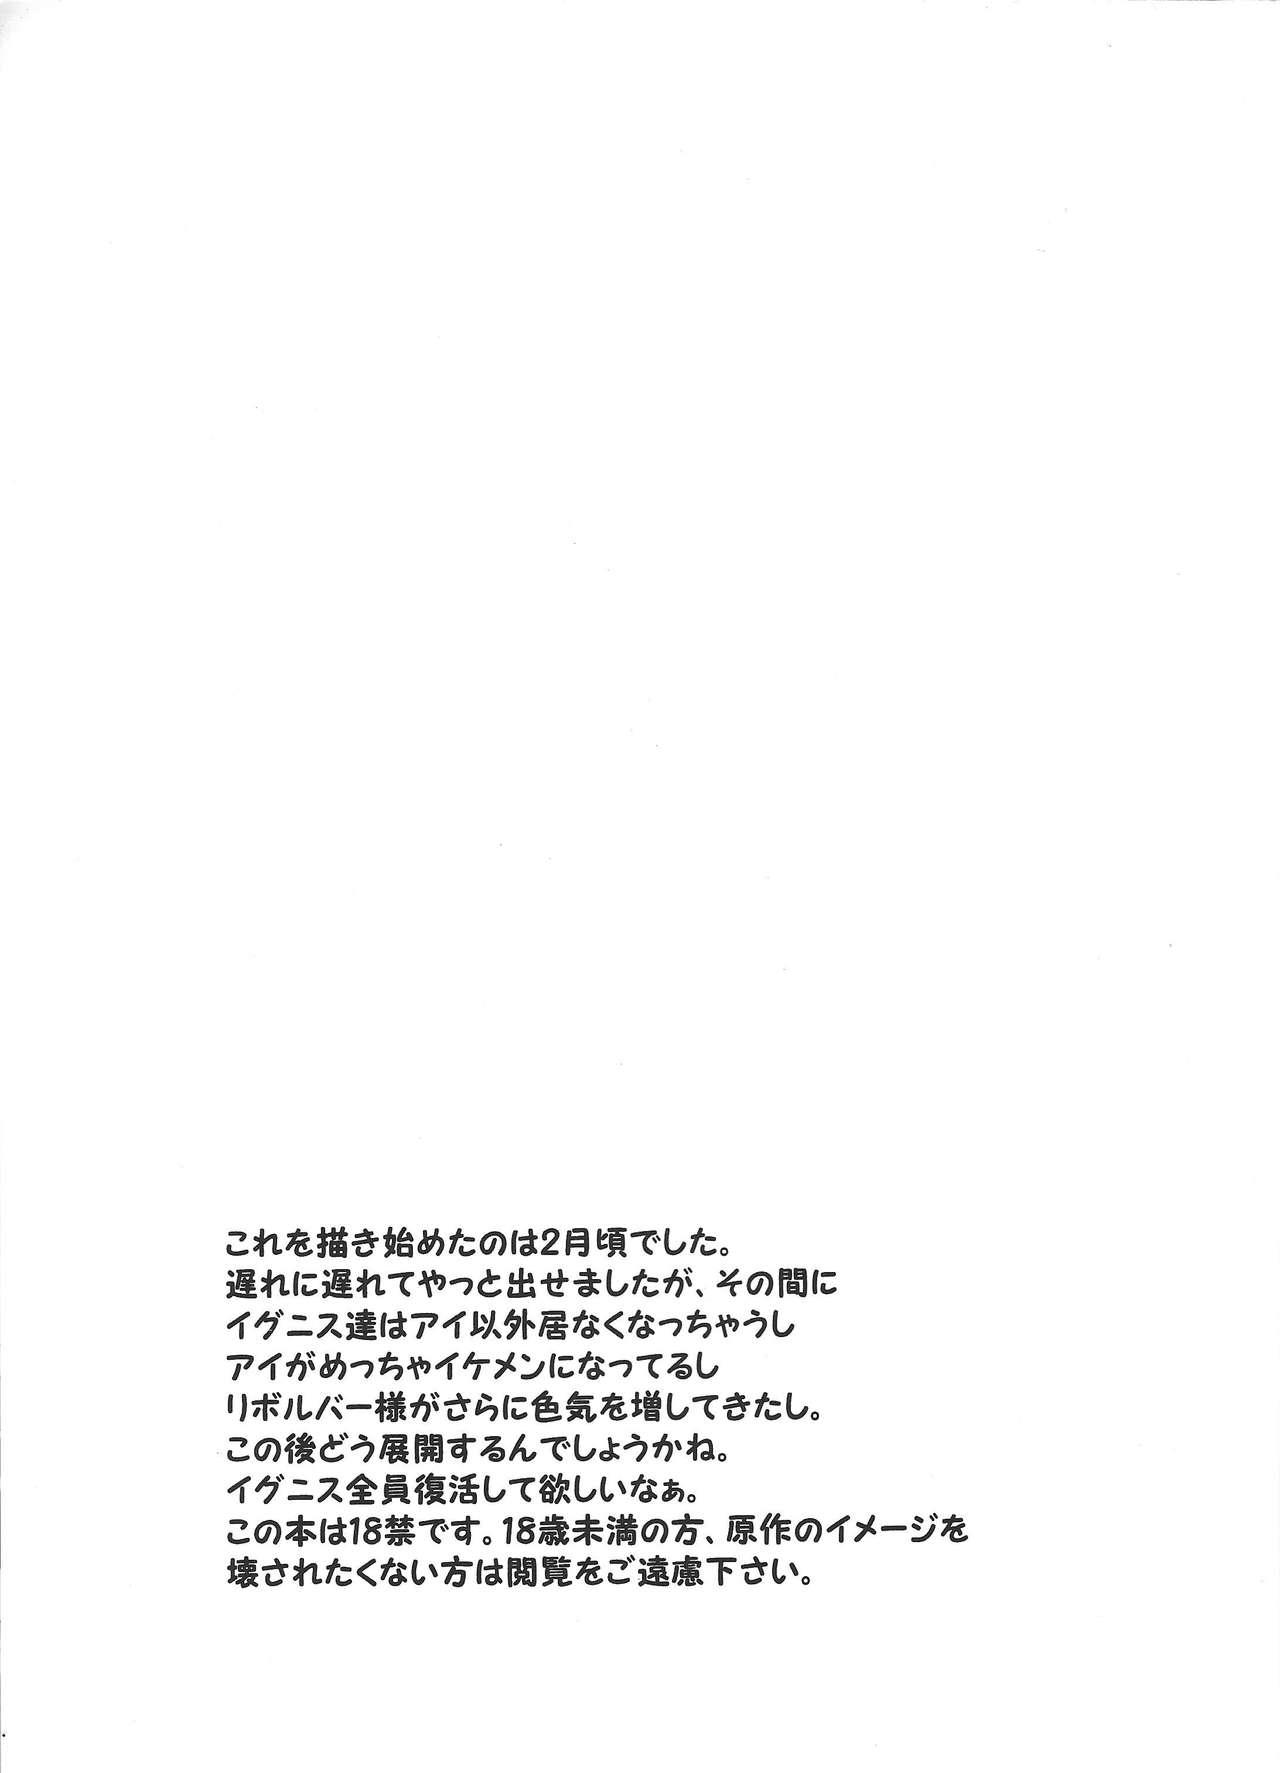 Gang Otsukiai Hajimemashita - Yu-gi-oh vrains Plump - Page 2